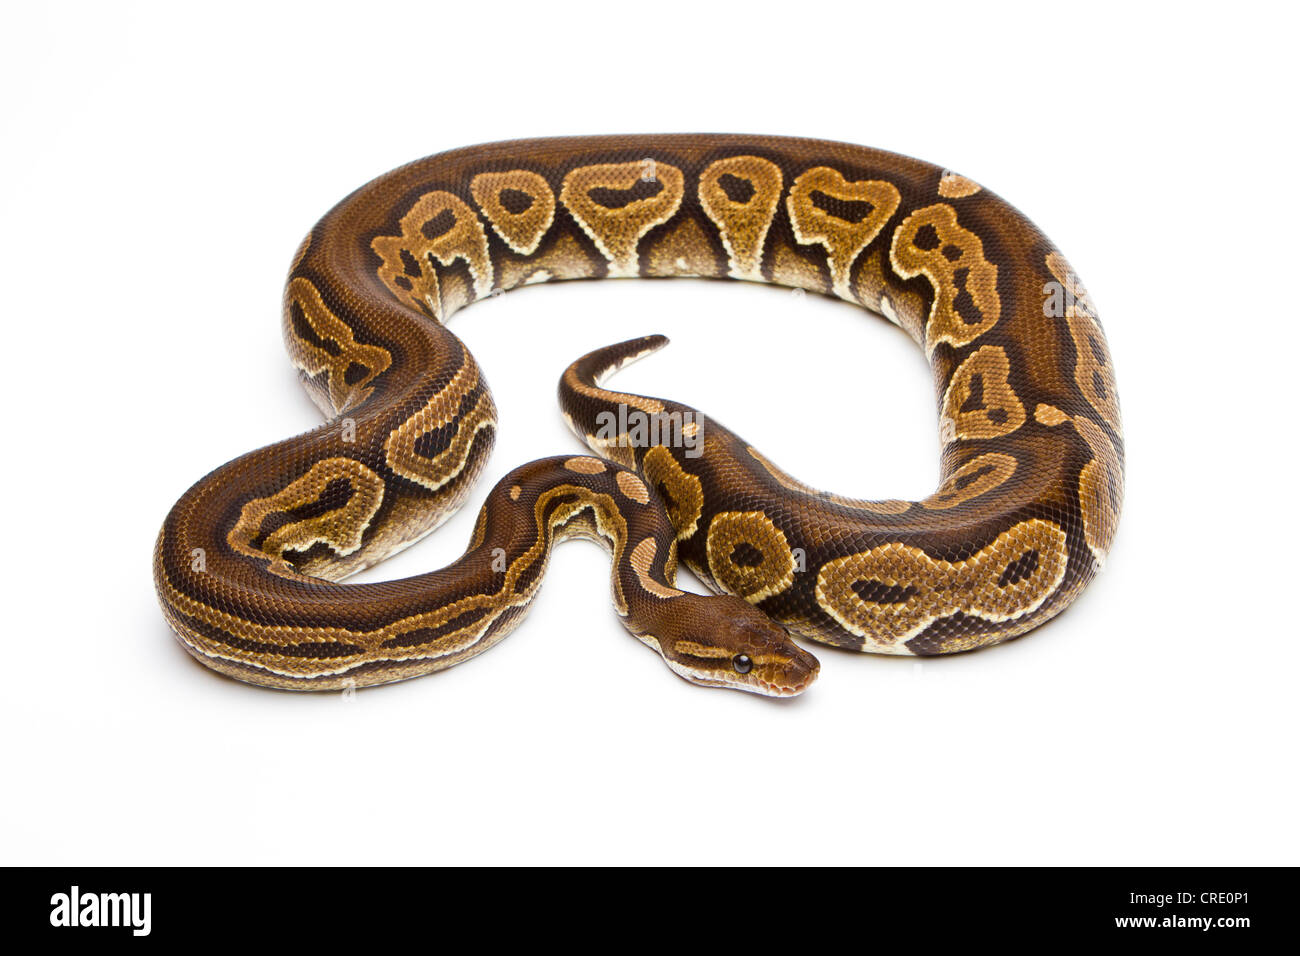 Royal Python (Python regius), Black Pastel, Willi Obermayer reptile breeding, Austria Stock Photo